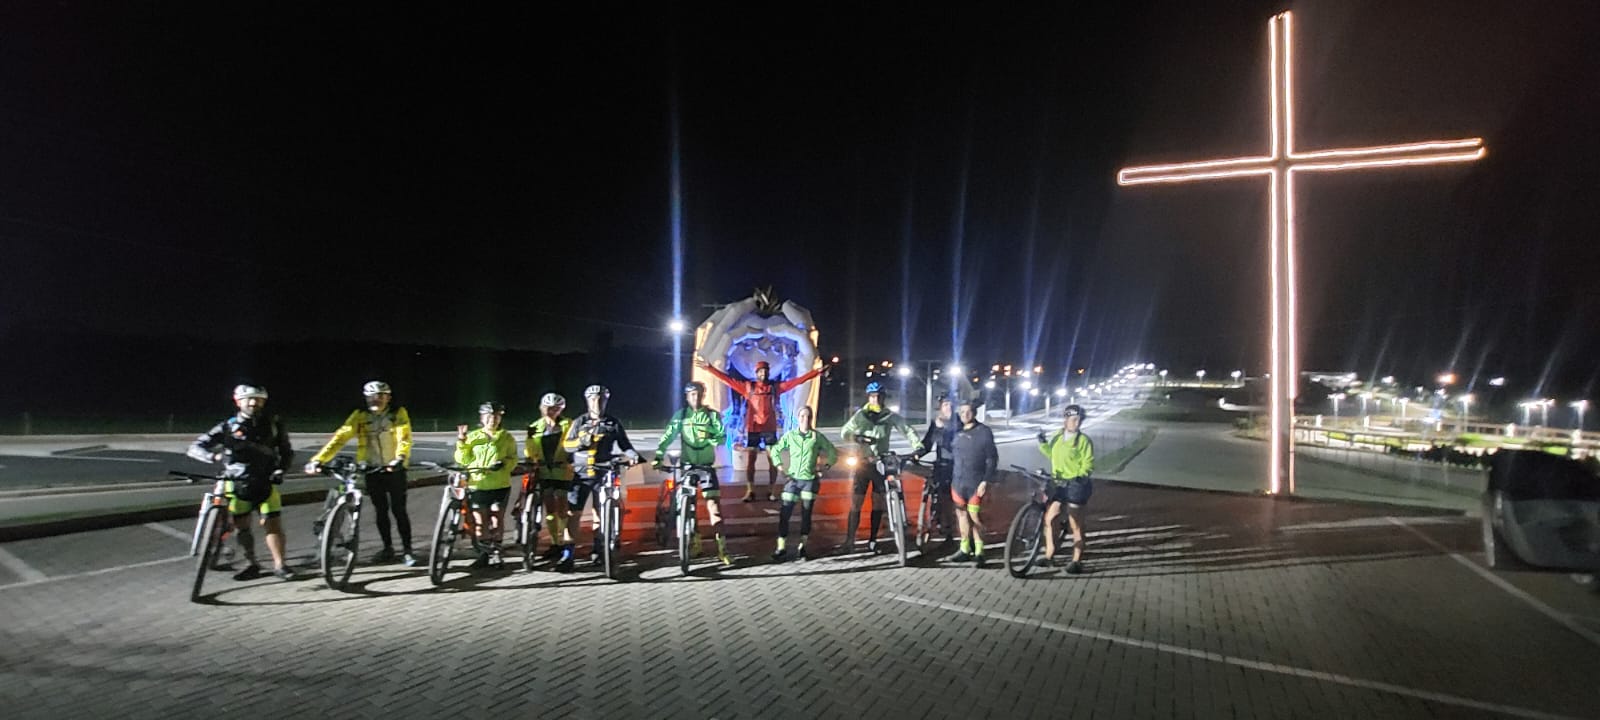 Featured image for “Grupo de treze ciclistas completa o circuito  do Caminho Sagrado após cerca de 10 horas”